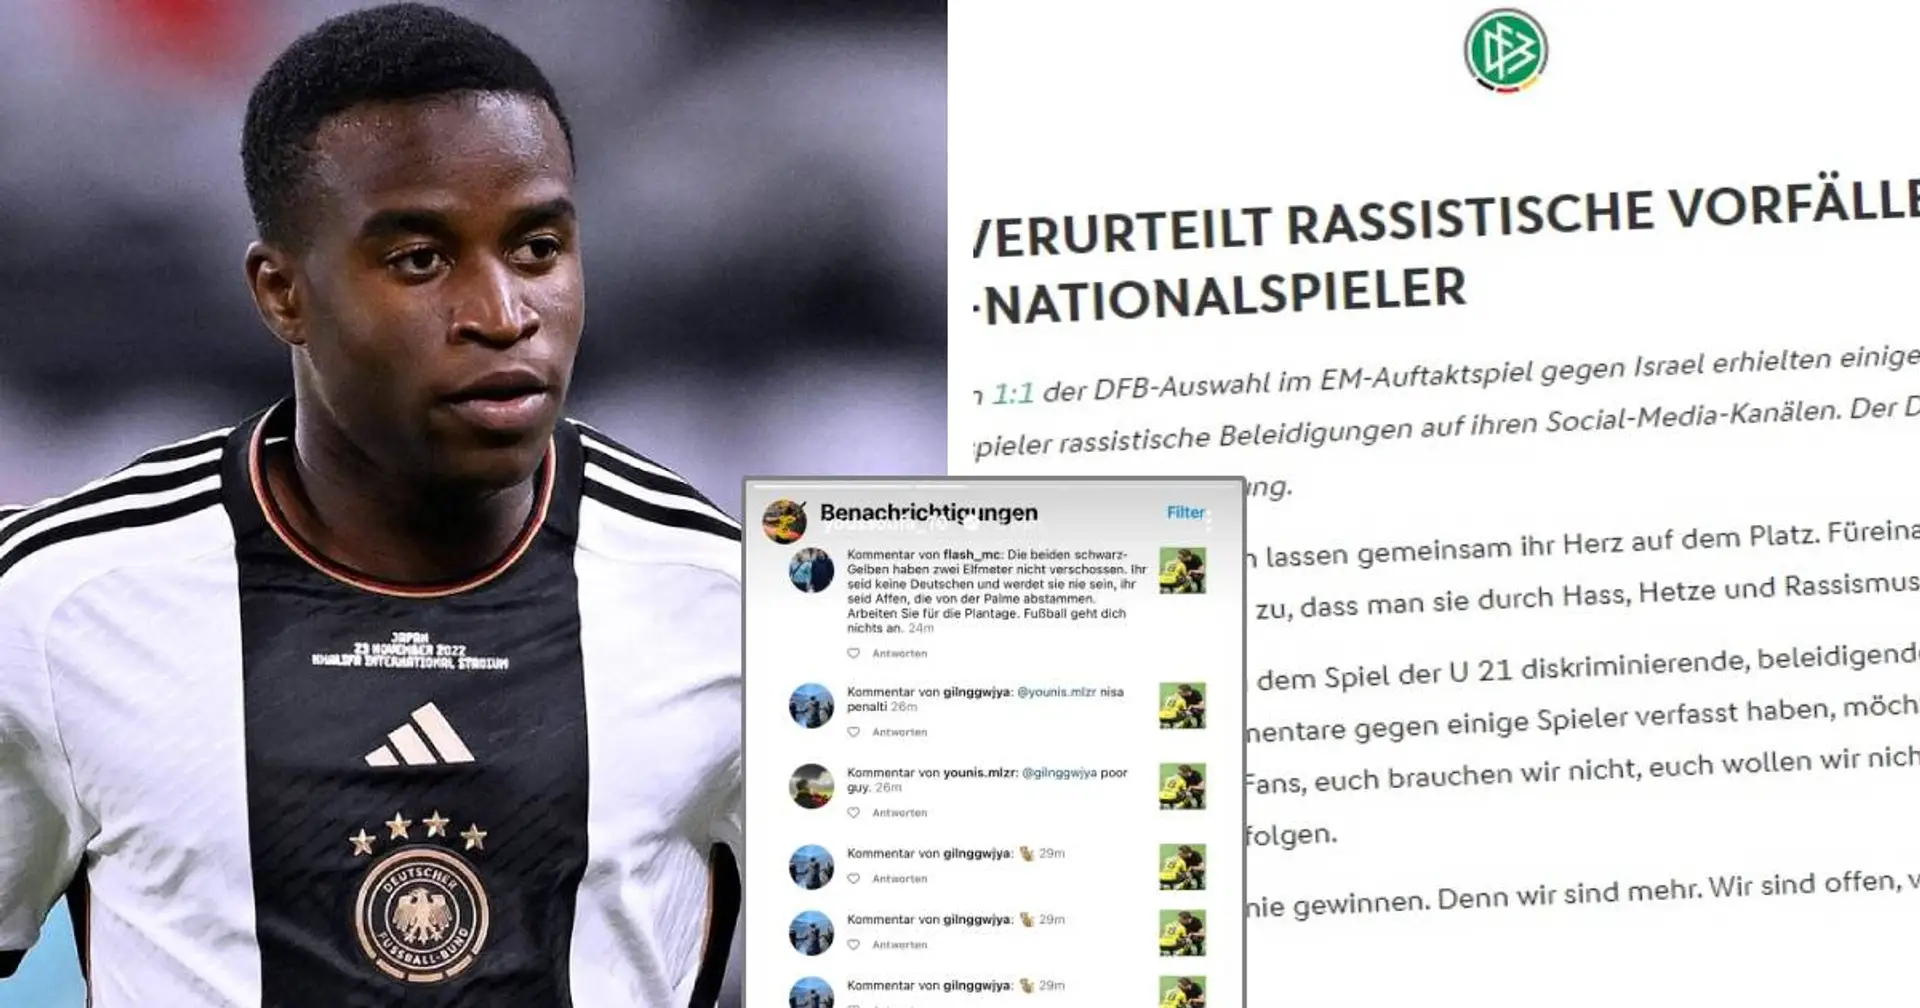 "Ihr seid keine Fans, euch brauchen wir nicht": DFB reagiert auf rassistische Beleidigungen gegen Moukoko